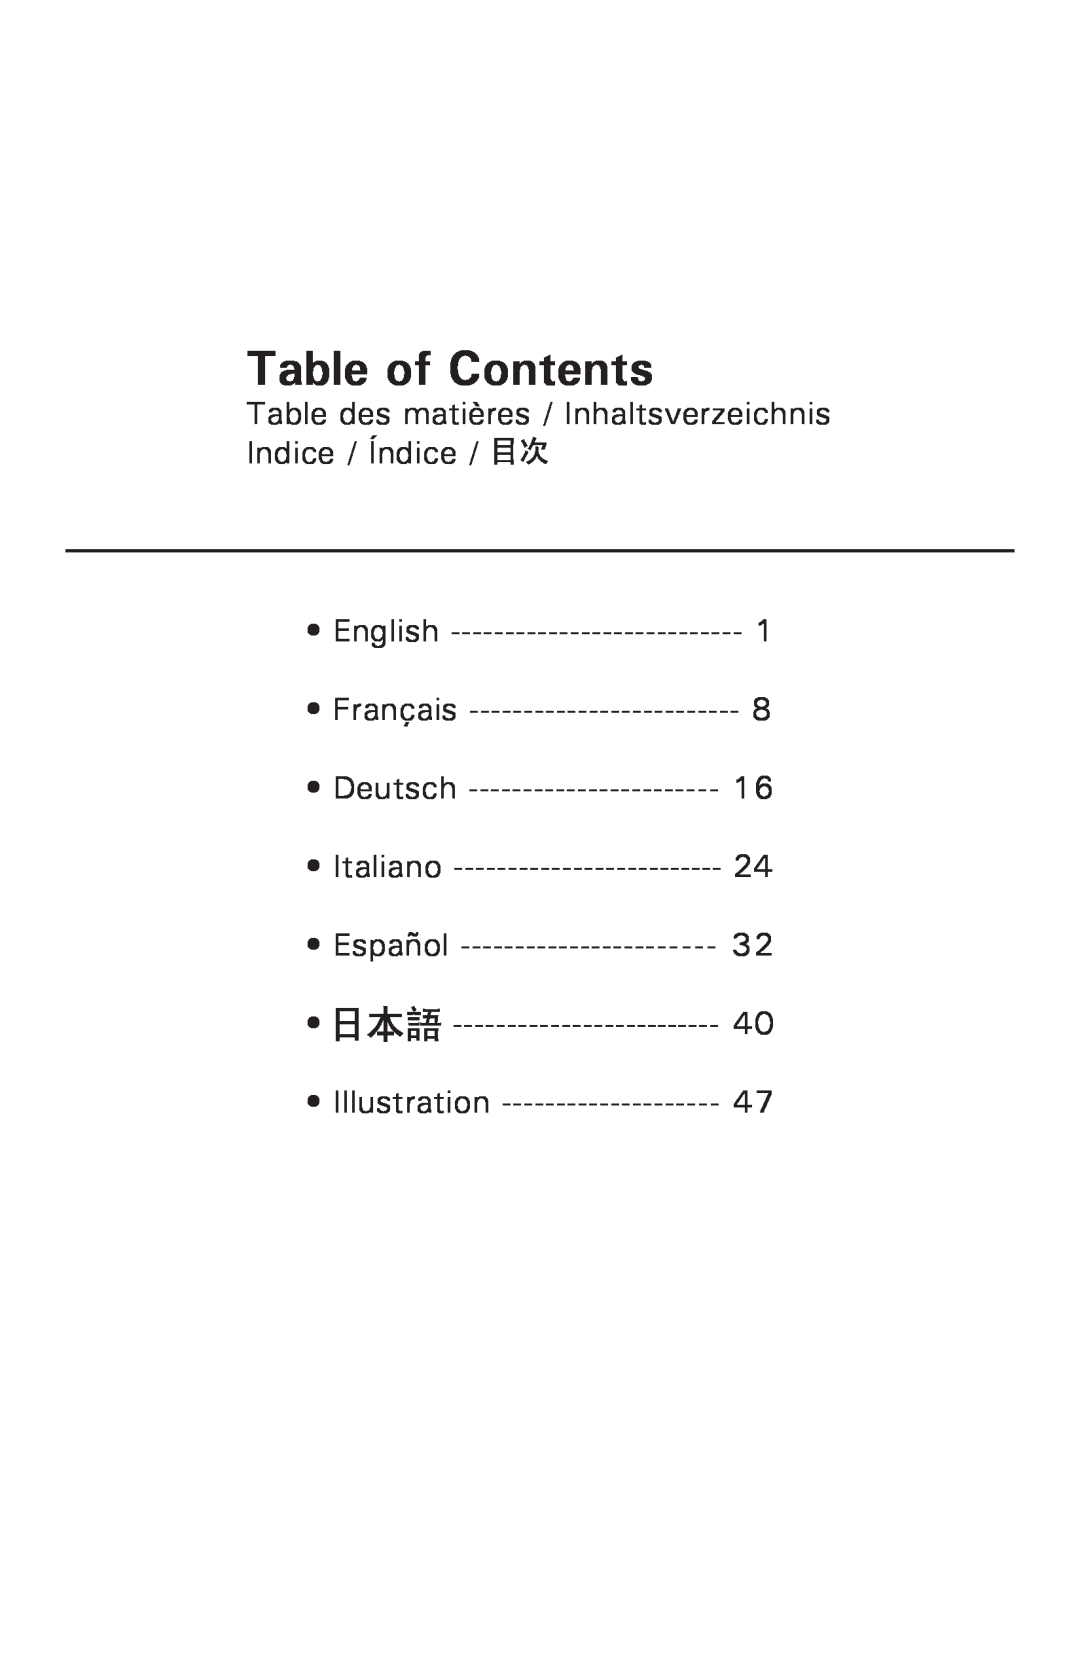 Antec P182 Table of Contents, Table des matières / Inhaltsverzeichnis Indice / Índice, English, Français, Deutsch, Español 